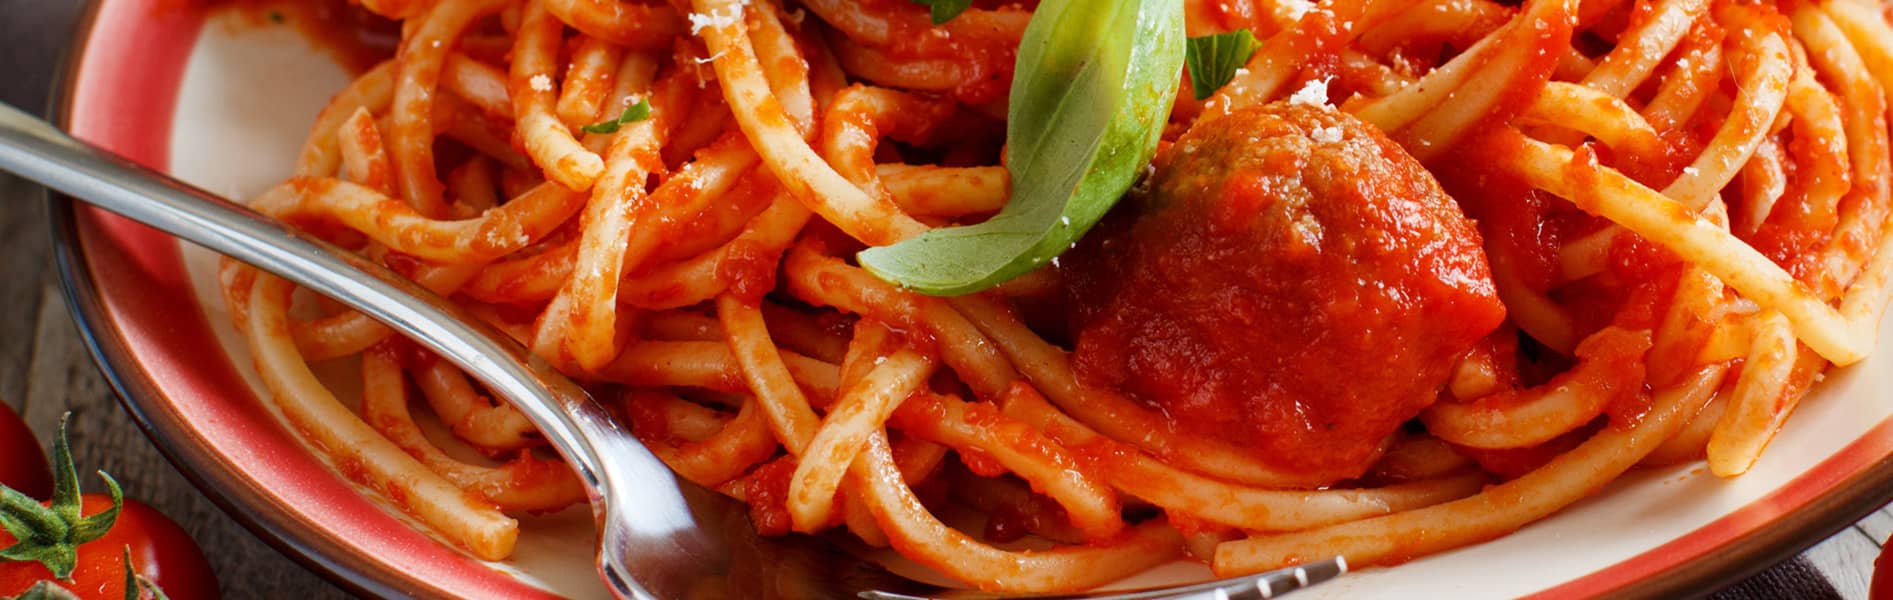 Spaghetti Doria con albondigas a la diabla.